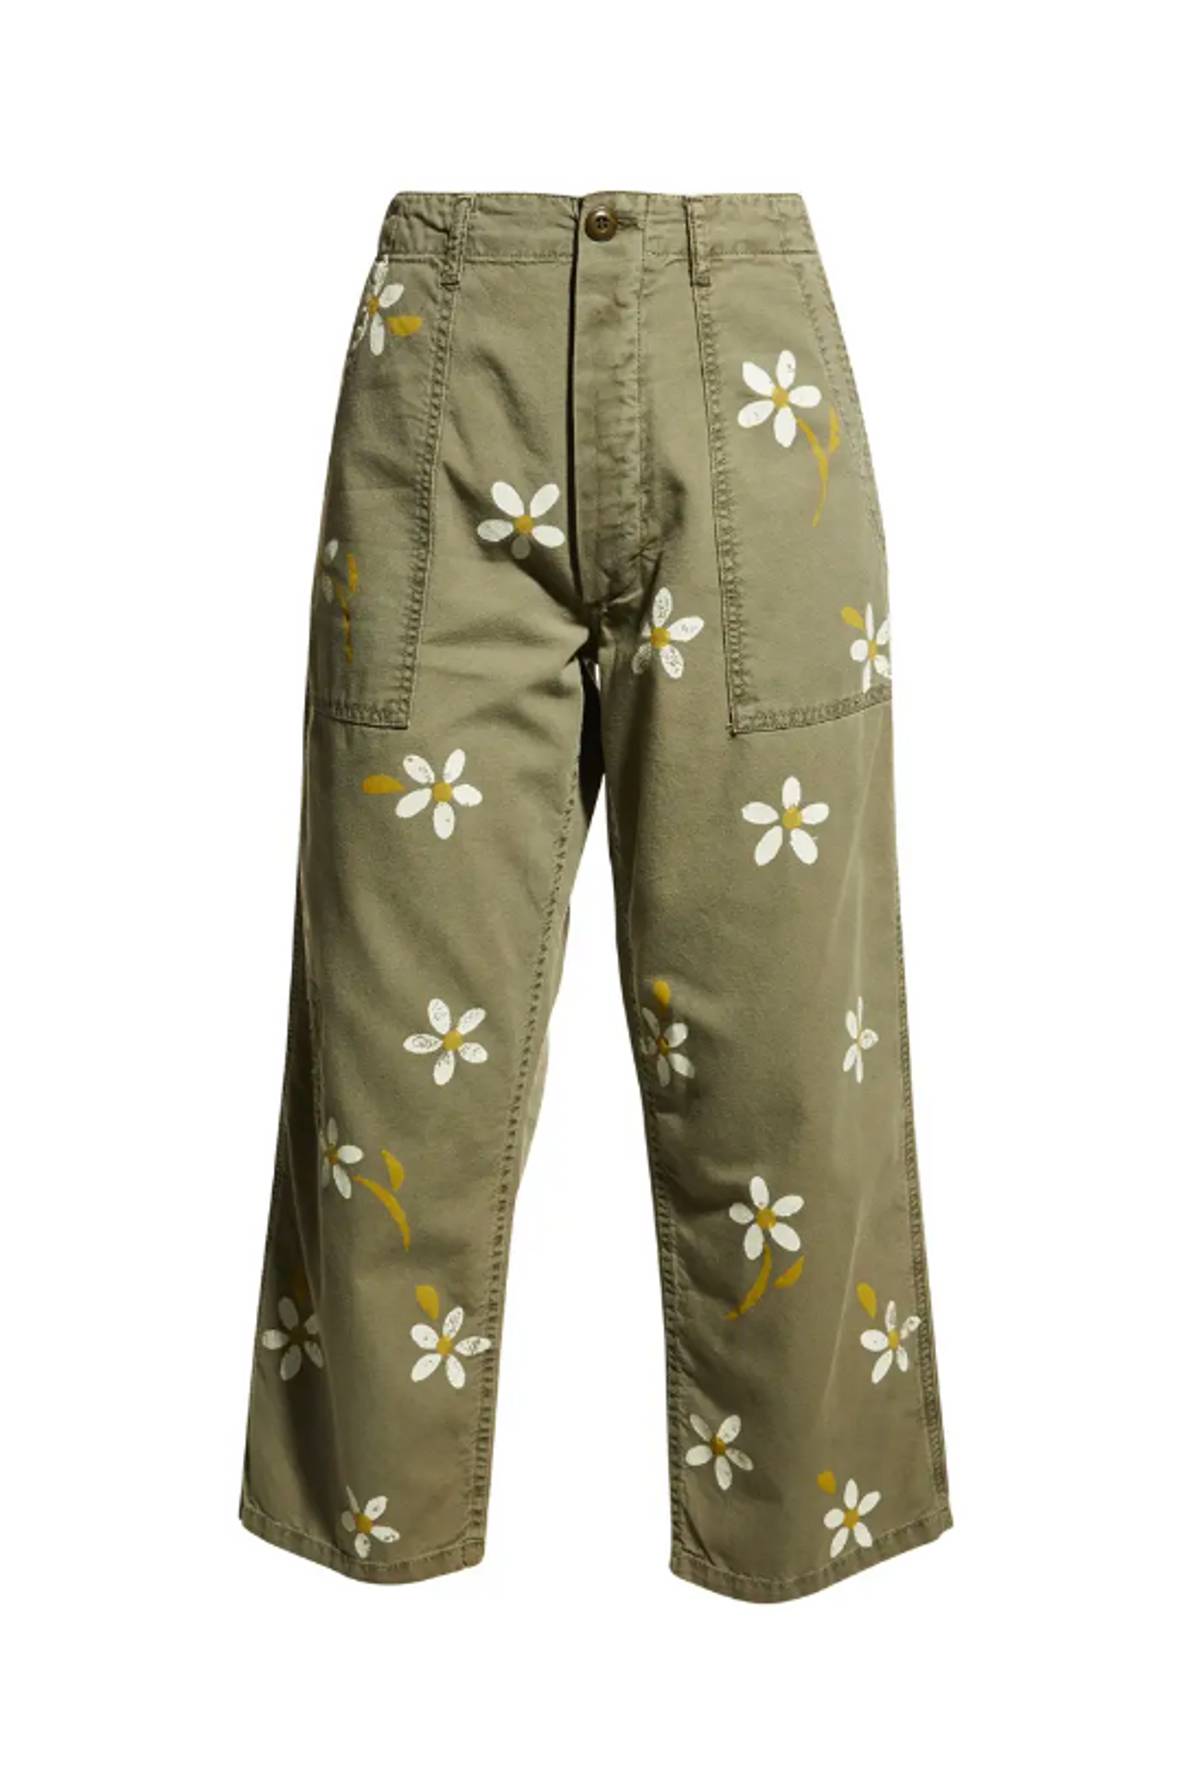 Vintage Army Floral Printed Pants